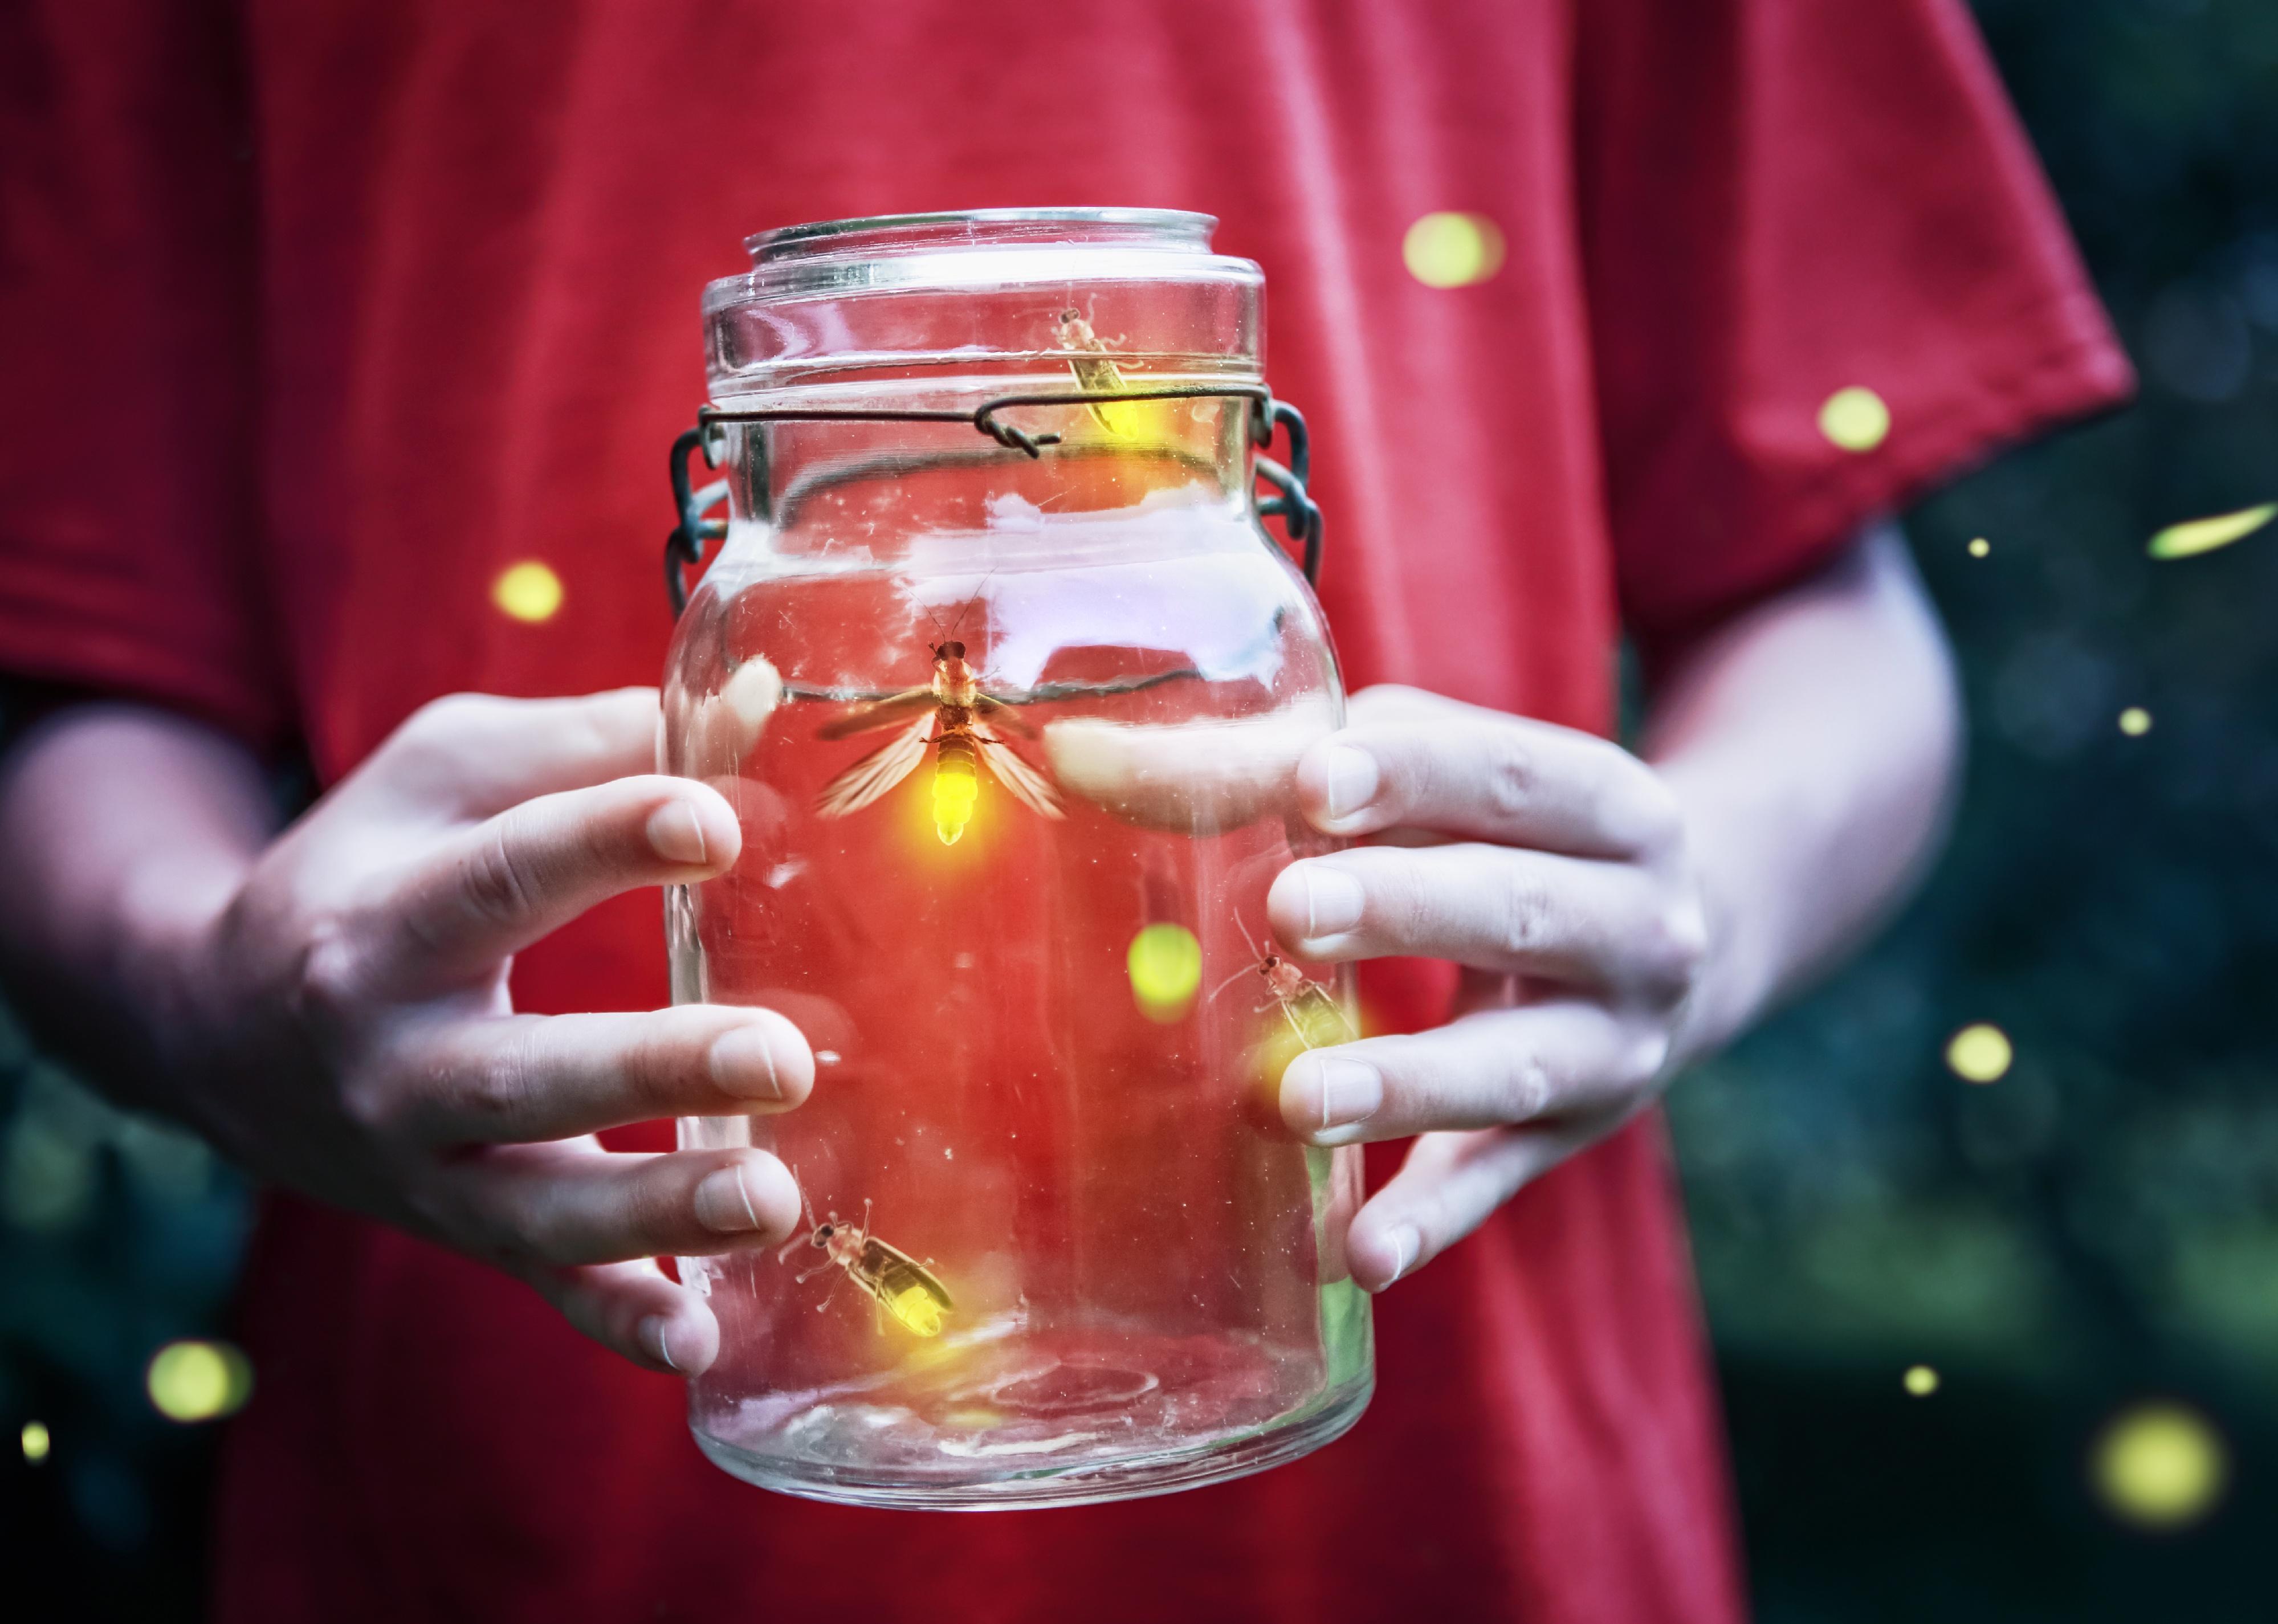 Fireflies in a jar held up by a boy.